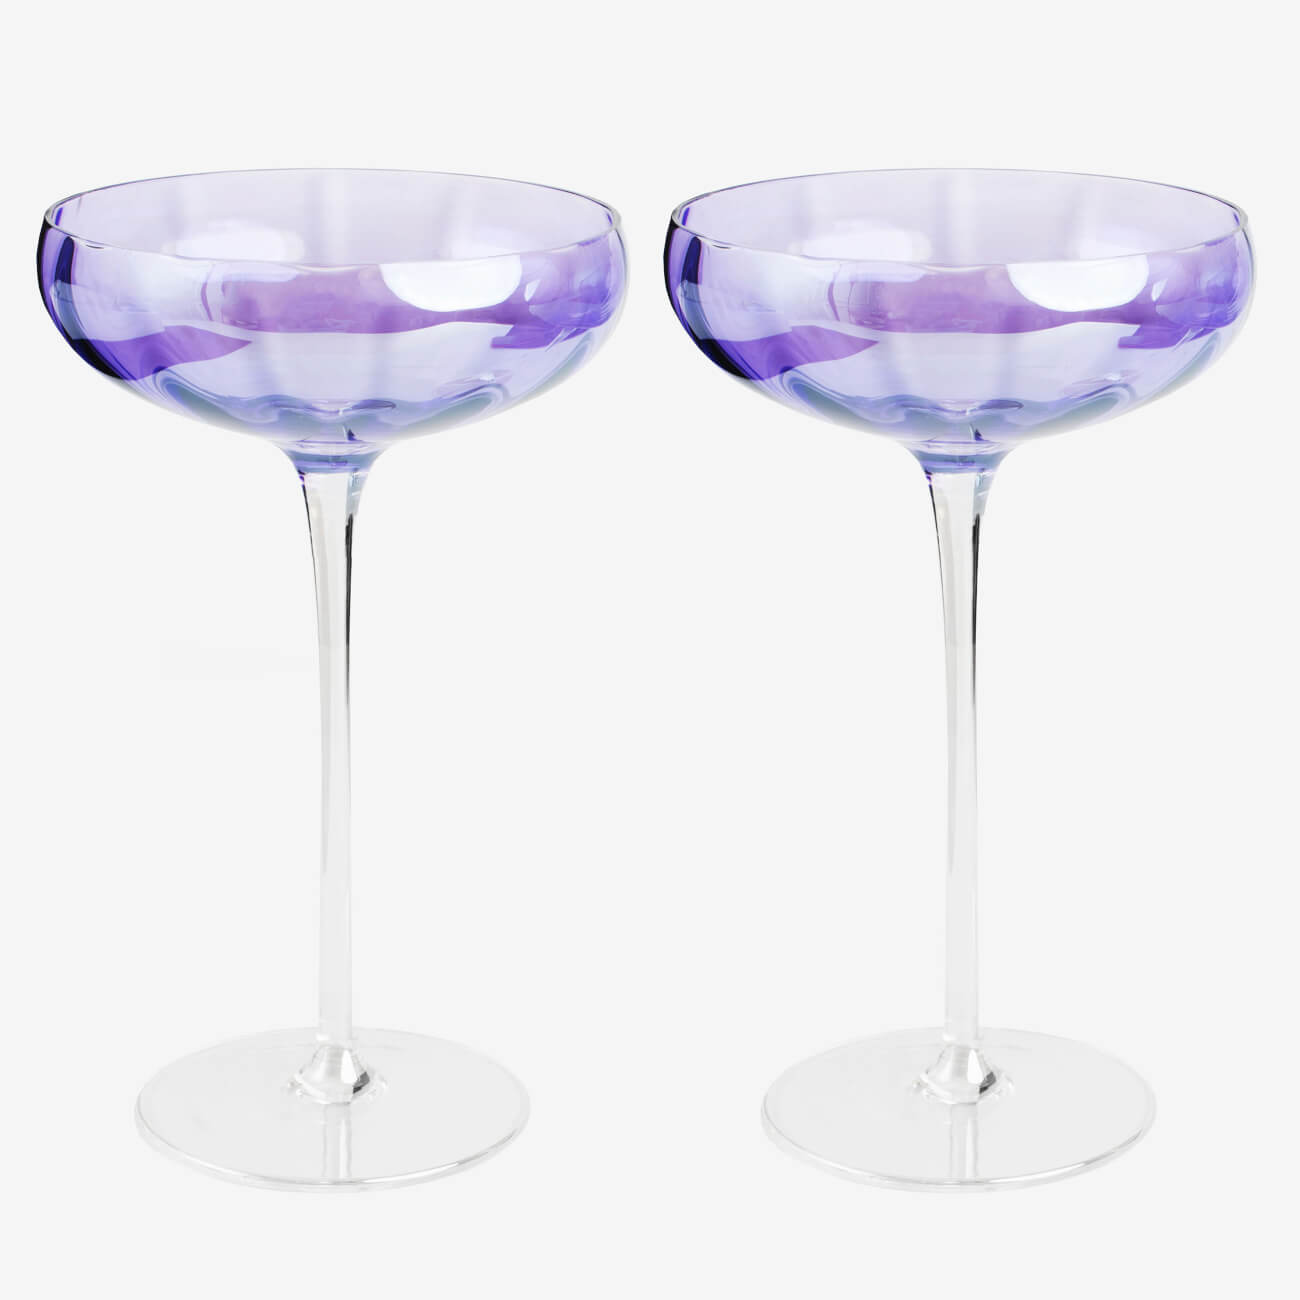 Бокал-креманка для шампанского, 220 мл, 2 шт, стекло, фиолетовый, Filo R color очки маска для езды на мототехнике стекло сине фиолетовый хамелеон черно белые ом 18